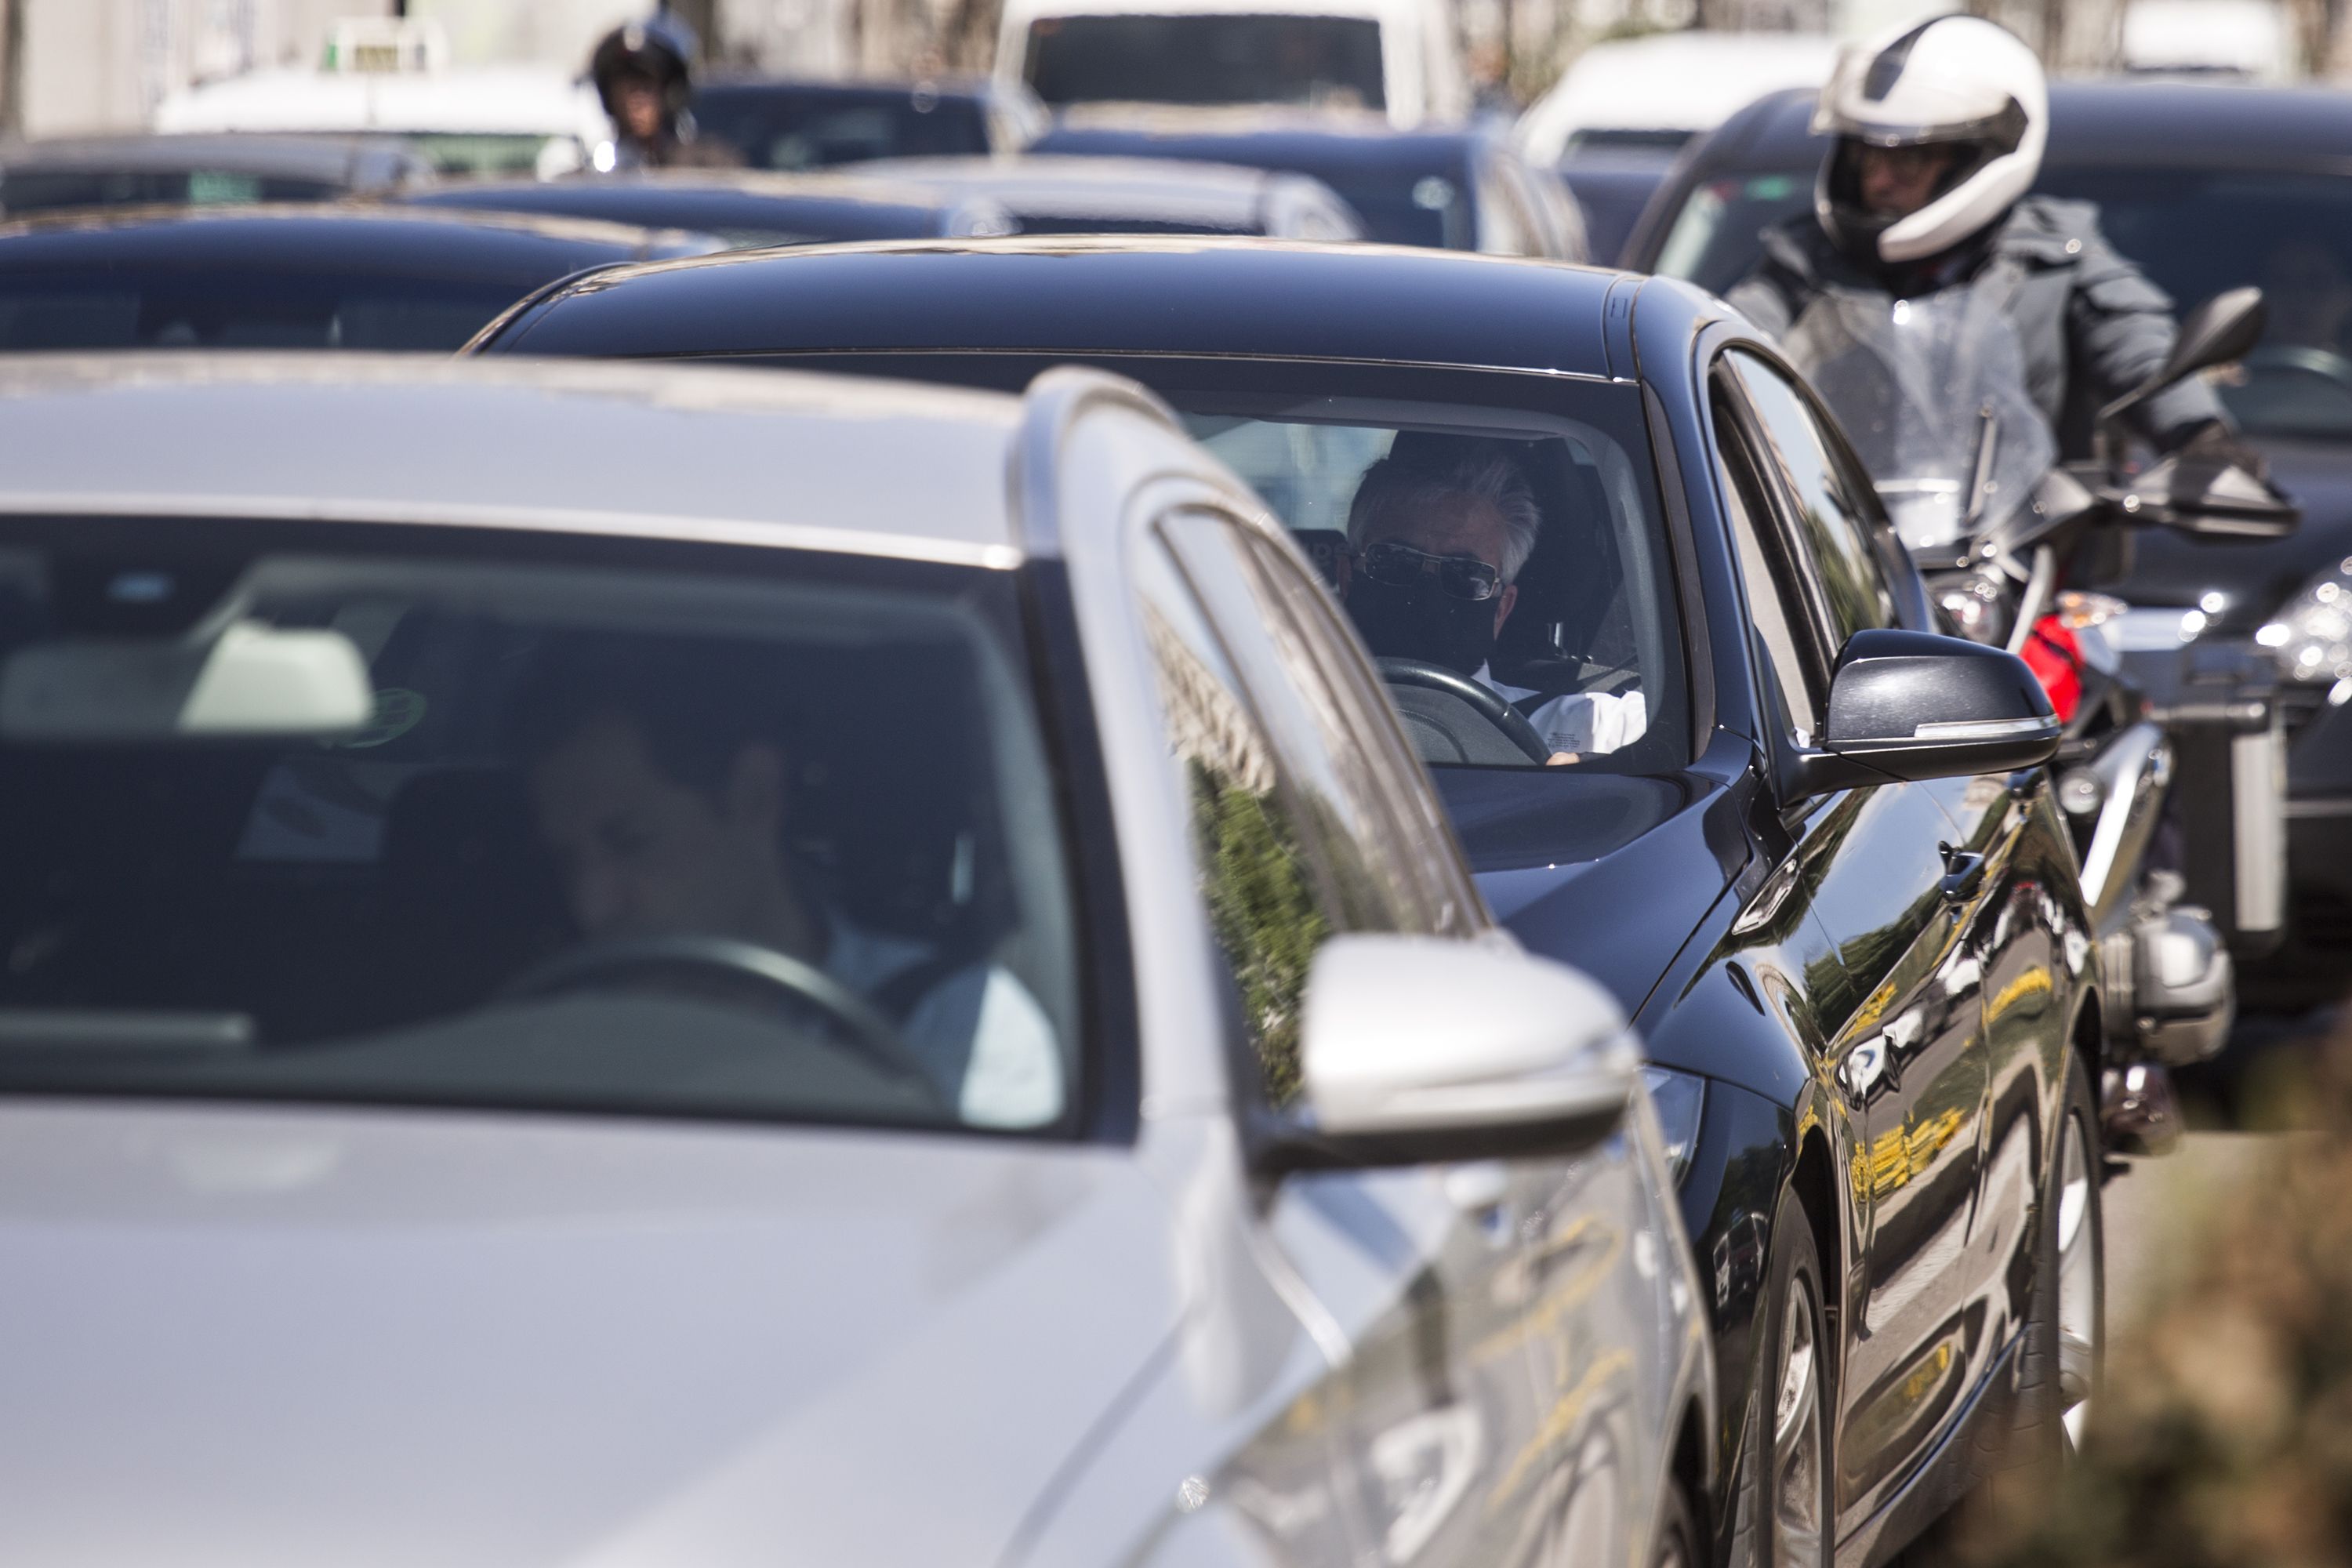 La Fiscalía pide por primera vez colaboración ciudadana para detectar infracciones de tráfico. Foto: Europa Press